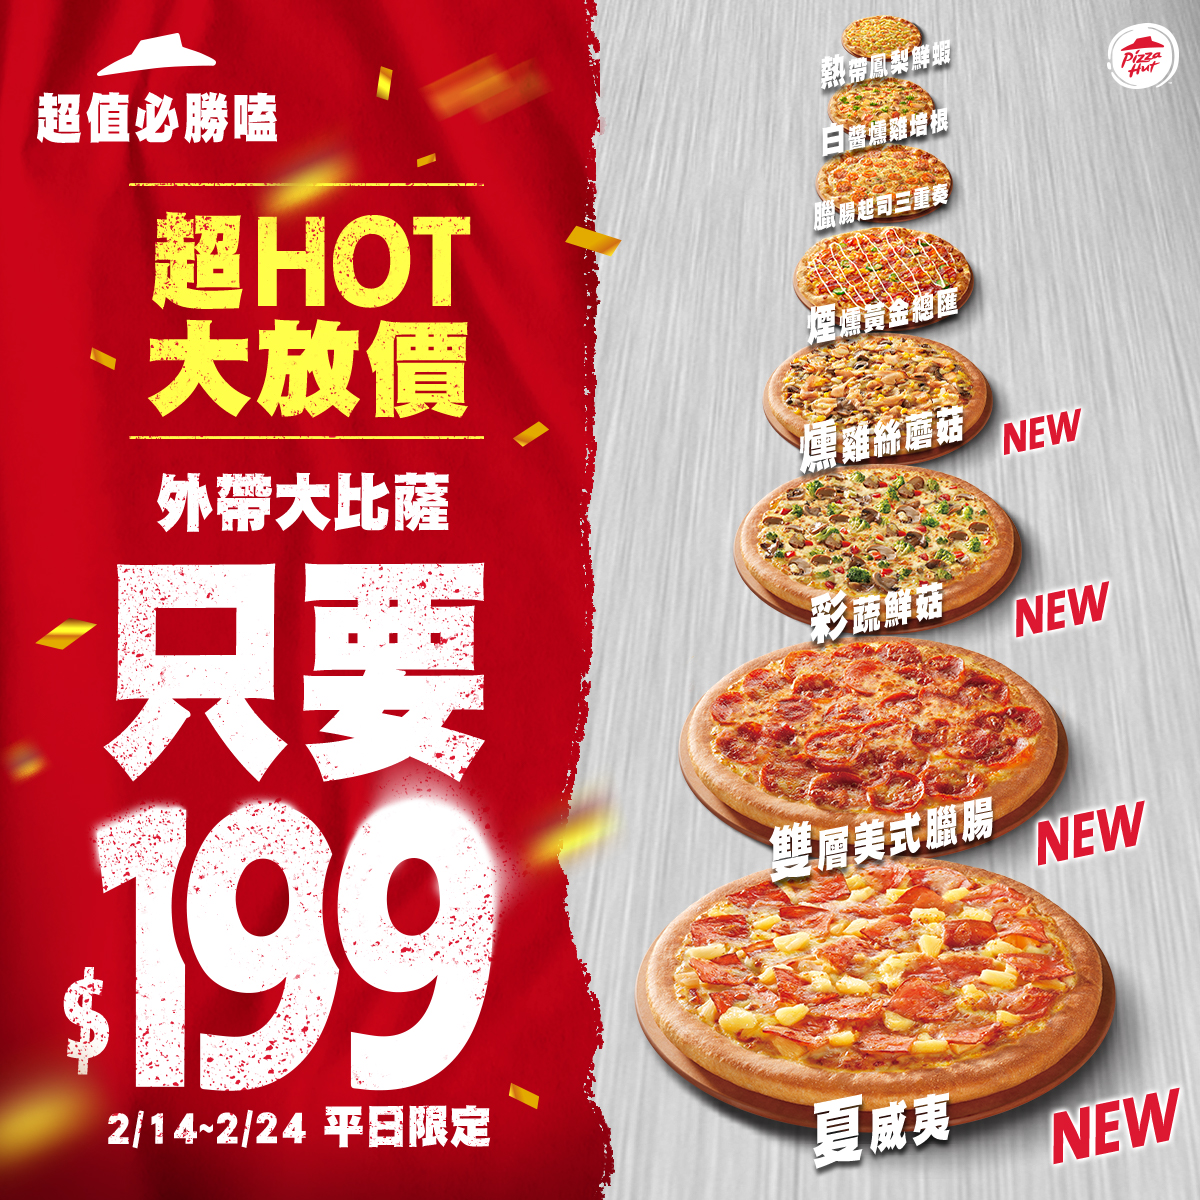 必勝客優惠「大披薩 199 元」新增了 4 種超人氣口味「彩蔬鮮菇(奶素)、雙層美式臘腸、燻雞絲蘑菇、夏威夷」